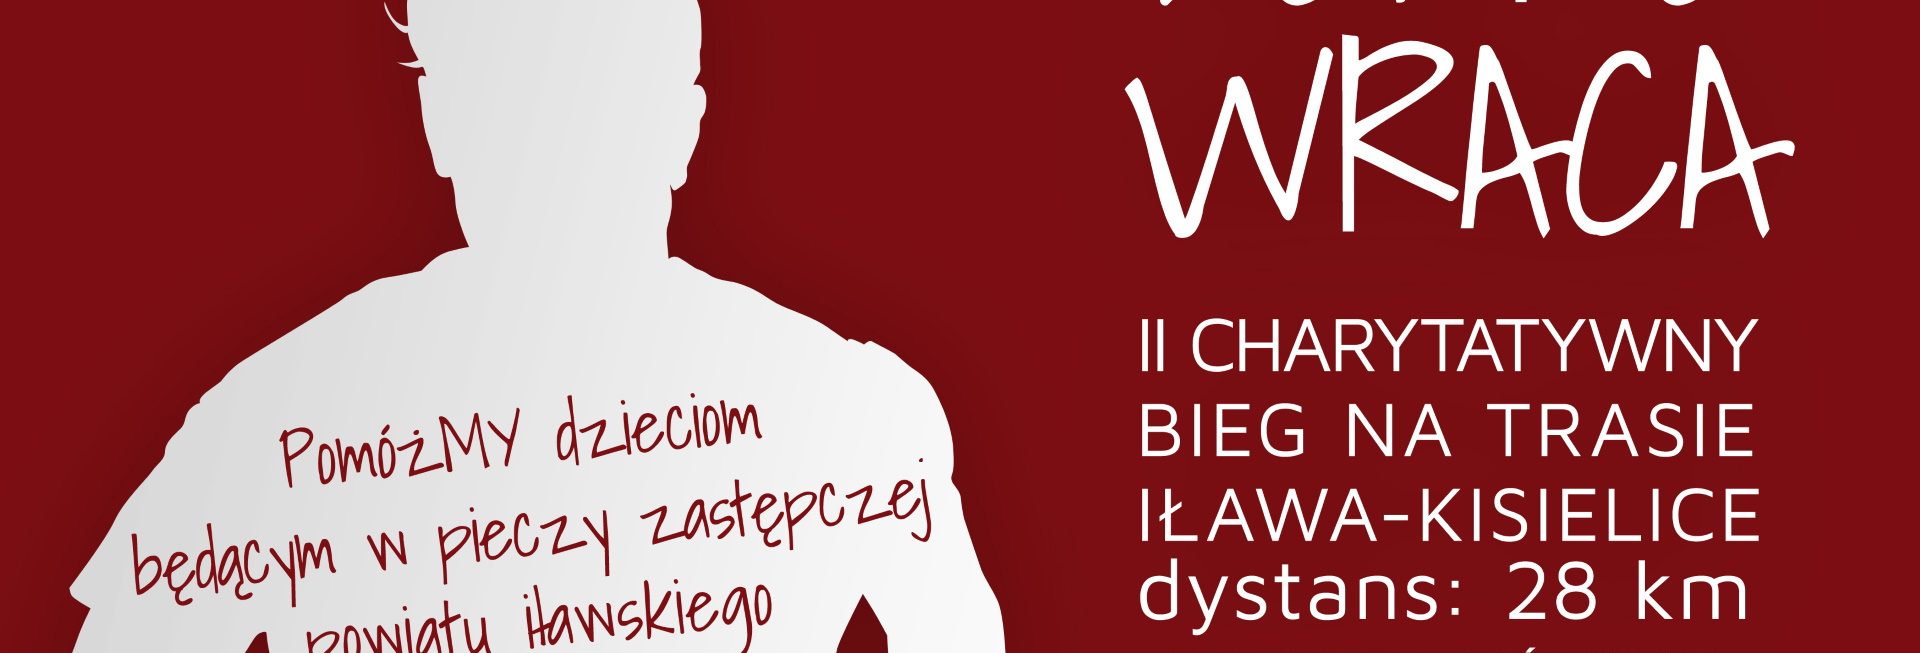 Plakat graficzny zapraszający na kolejną 2.edycję Charytatywnego Biegu "Dobro Wraca" - Iława 2021.